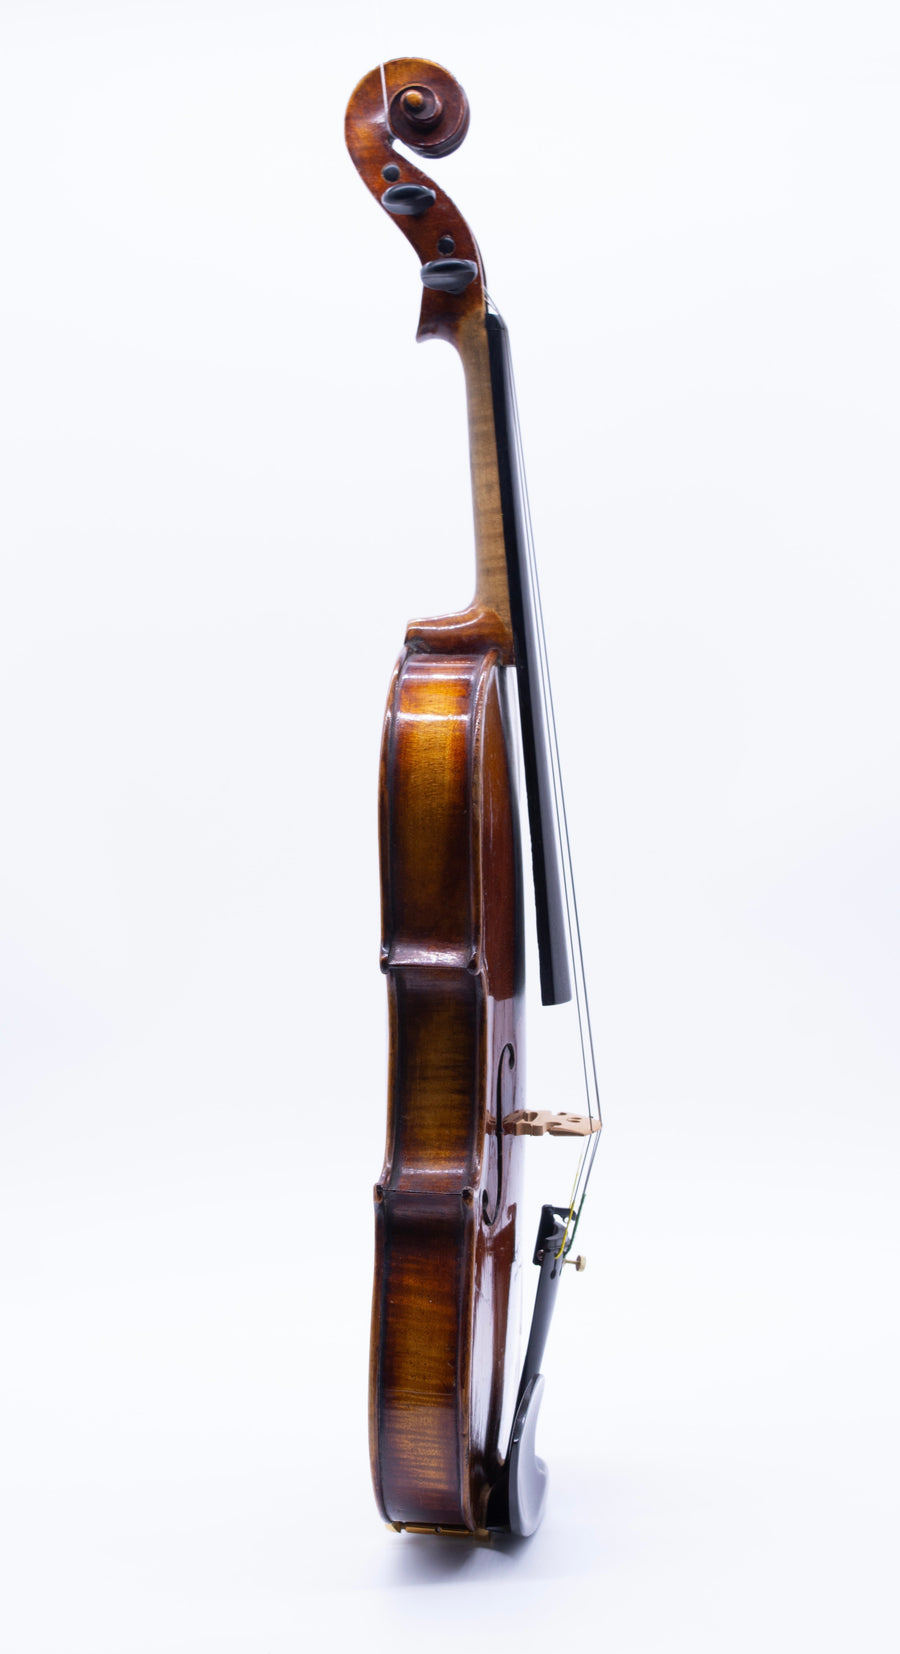 A Pre World War II Violin from Neukirchen